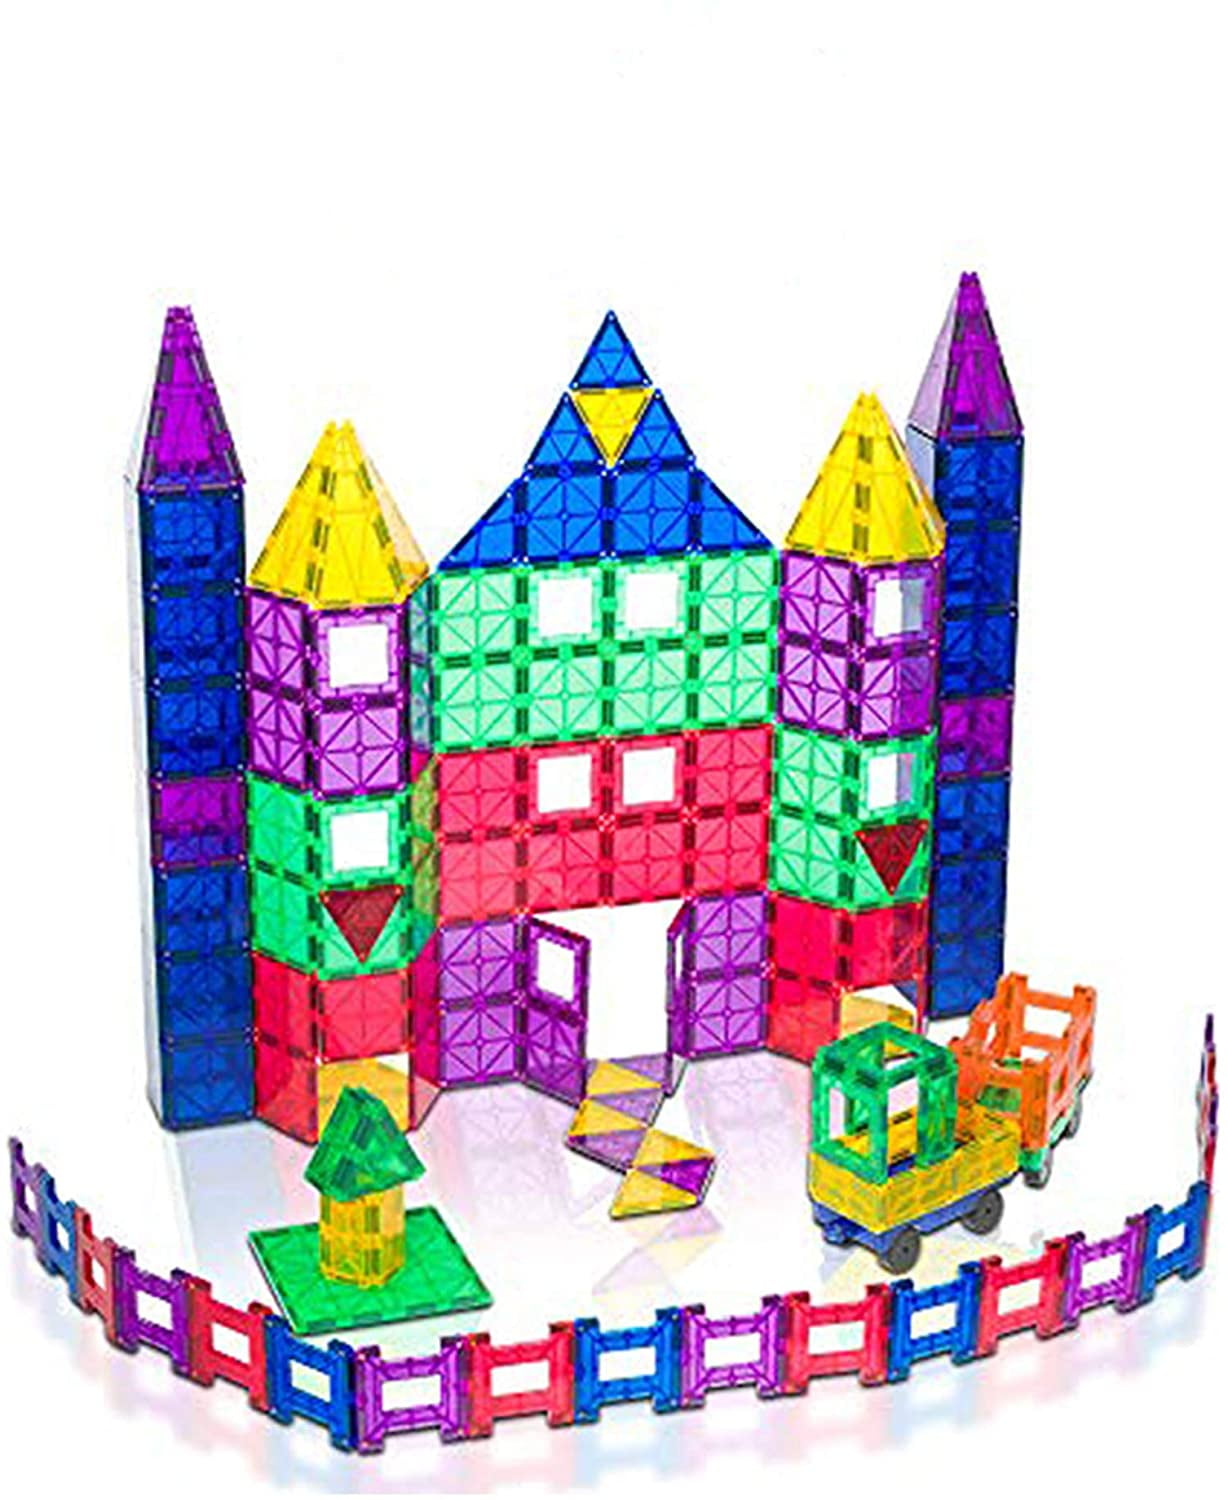  Pix Brix Pixel Art Puzzle Bricks – 6,000 Piece Pixel Art  Container, 12 Color Light Palette – Interlocking Building Bricks, Create 2D  and 3D Builds Without Water or Glue – Stem